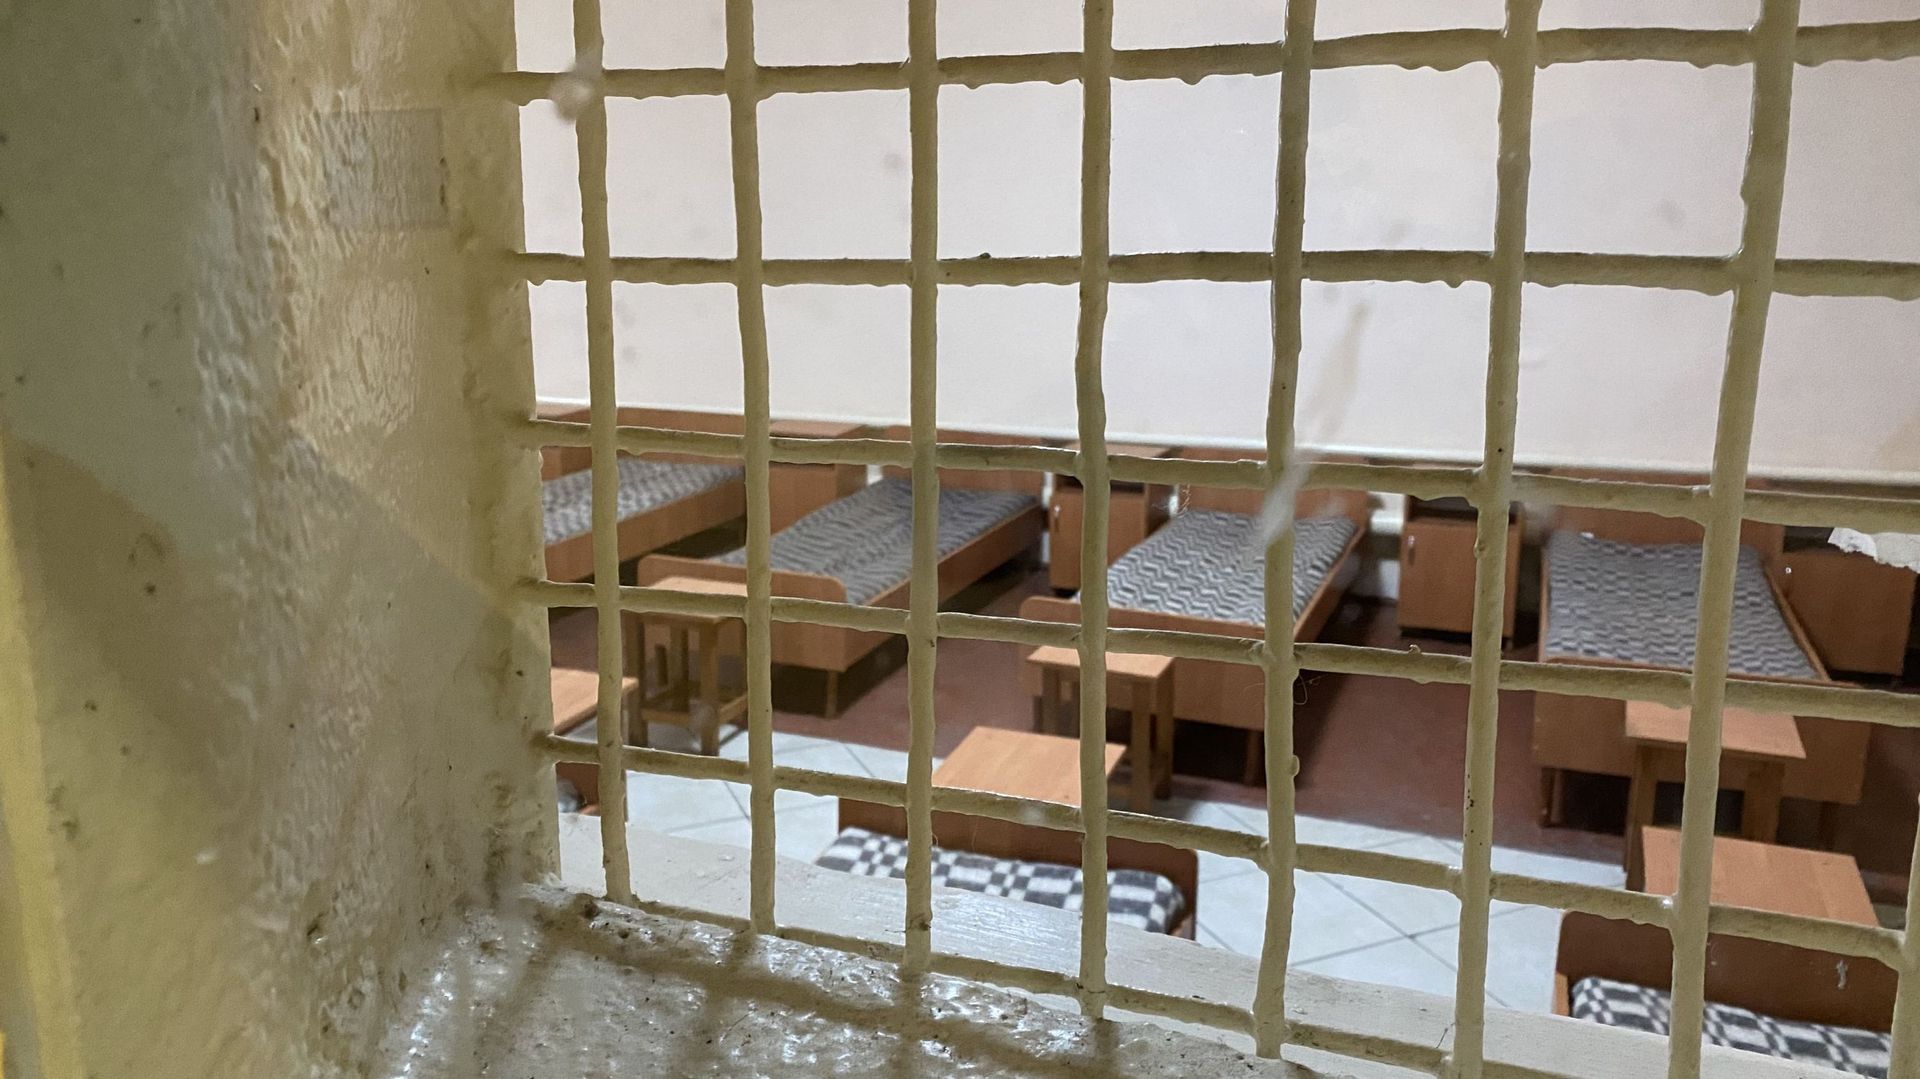 Les prisonniers dorment dans de grandes pièces aménagées en dortoir.